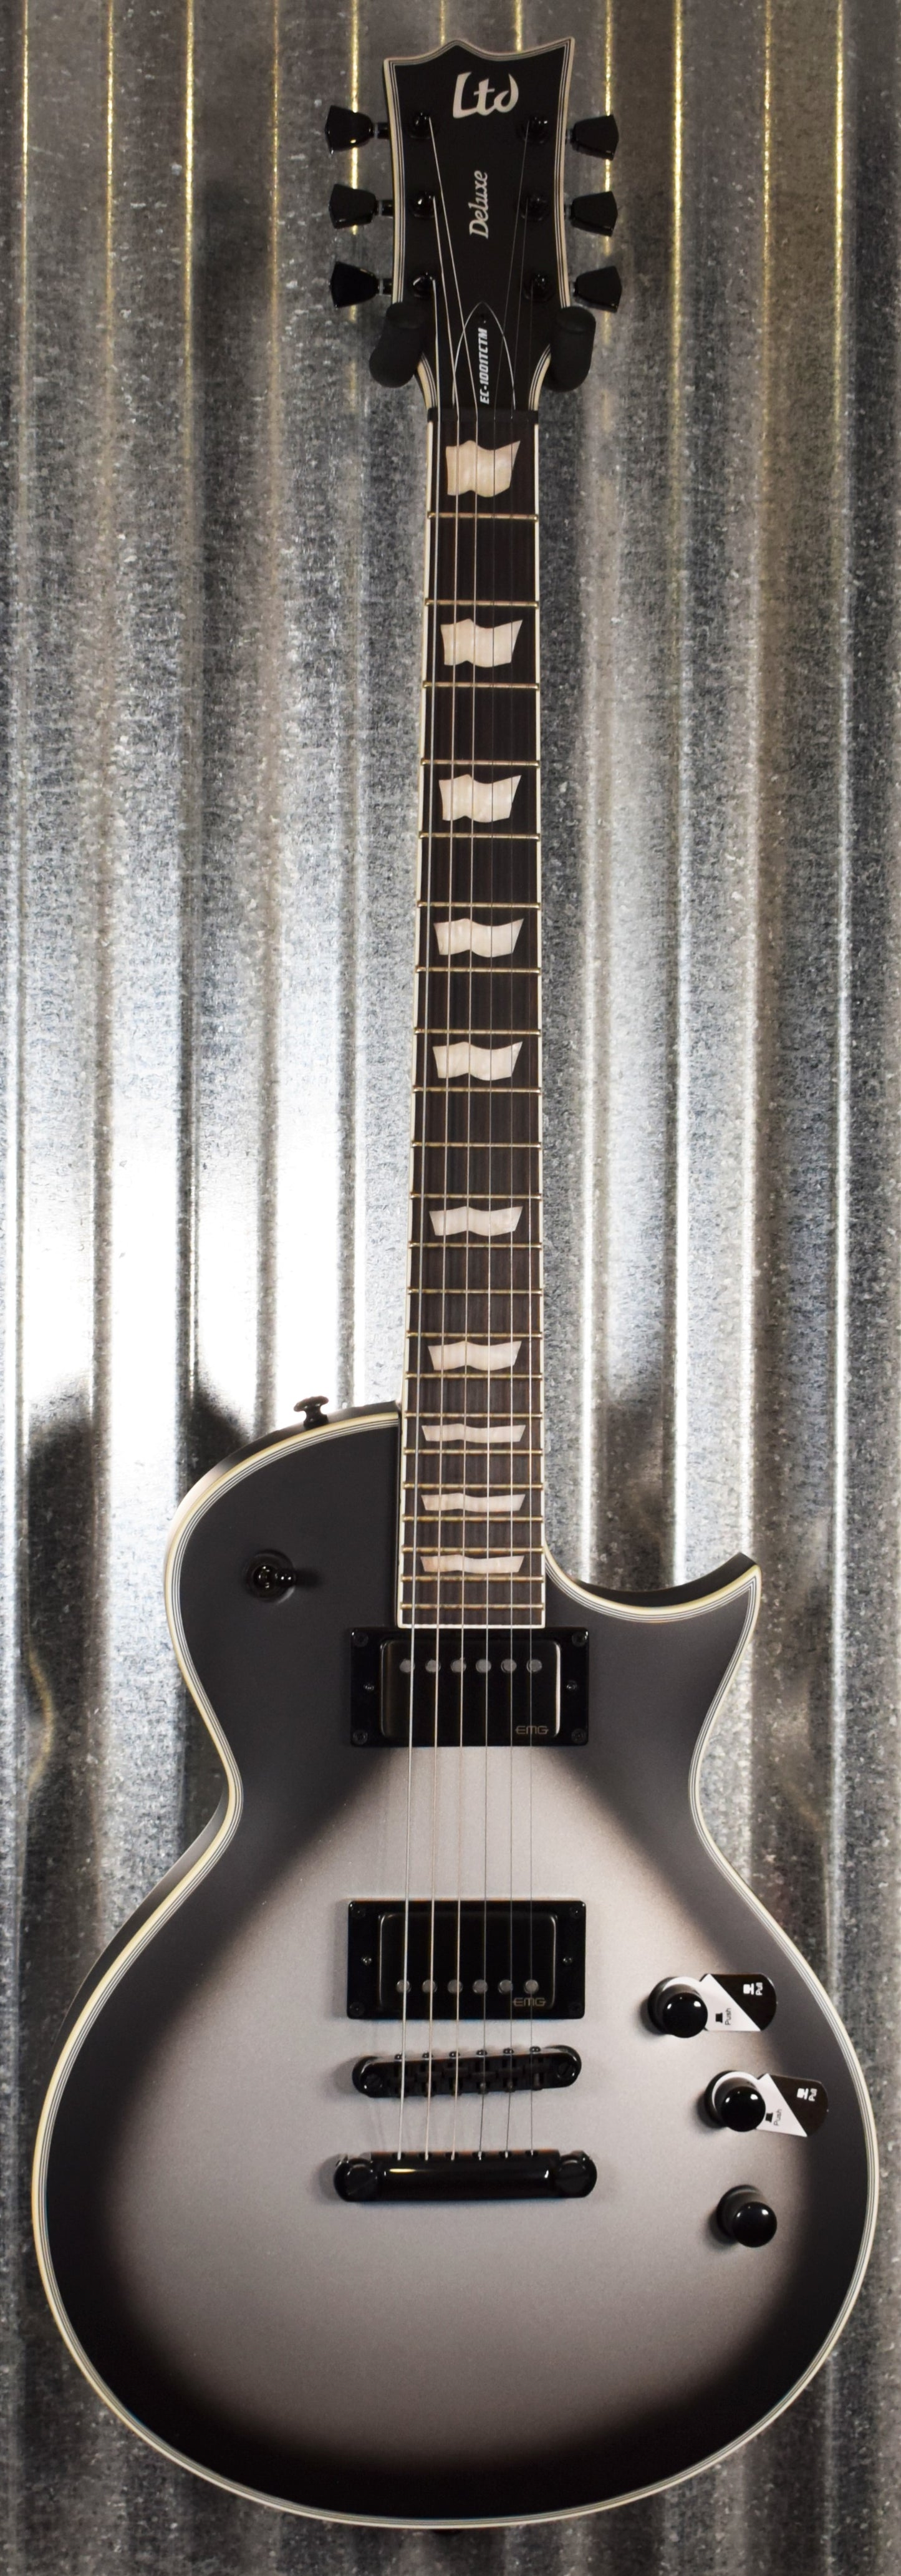 ESP LTD EC-1001T Deluxe Custom Silver Sunburst Satin EMG Guitar EC1001TCTMSSBS #2234 Demo